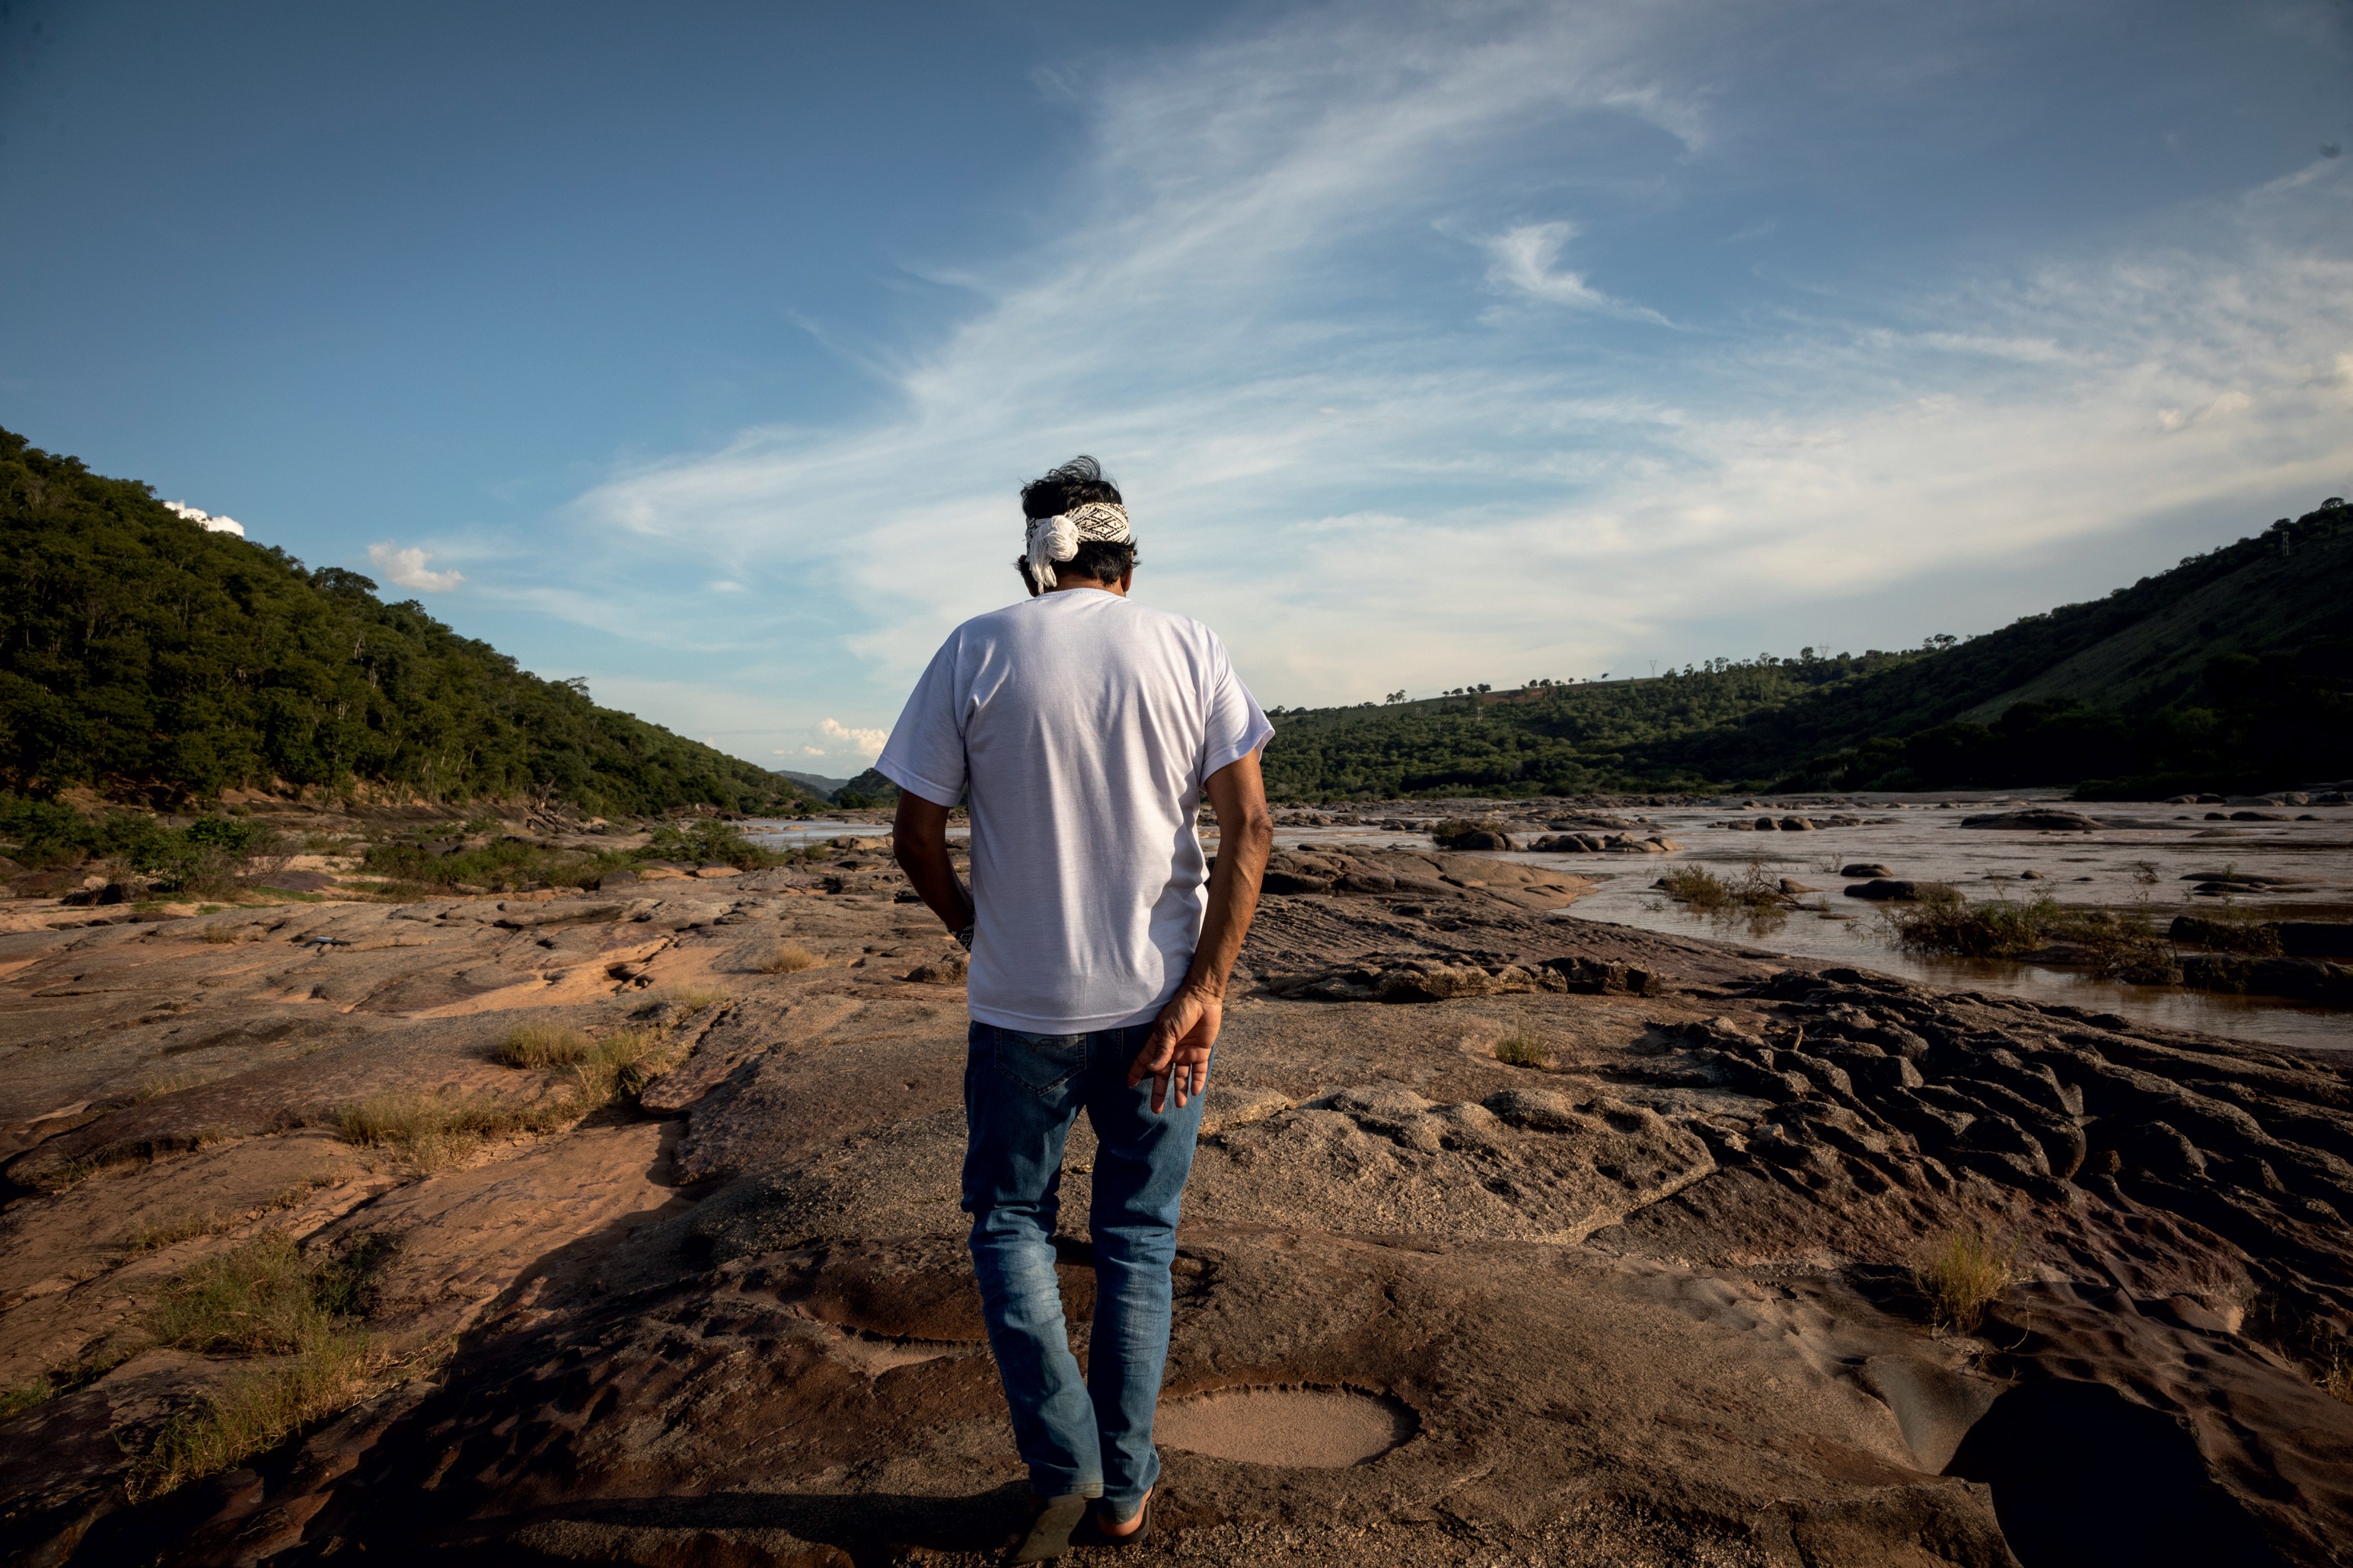 “Ninguém mais pesca nem caça nada aqui. As pessoas cultivam com medo”, conta o líder indígena Krenak, sobre a vida após o desastre de Mariana (Foto: Ruy Teixeira)